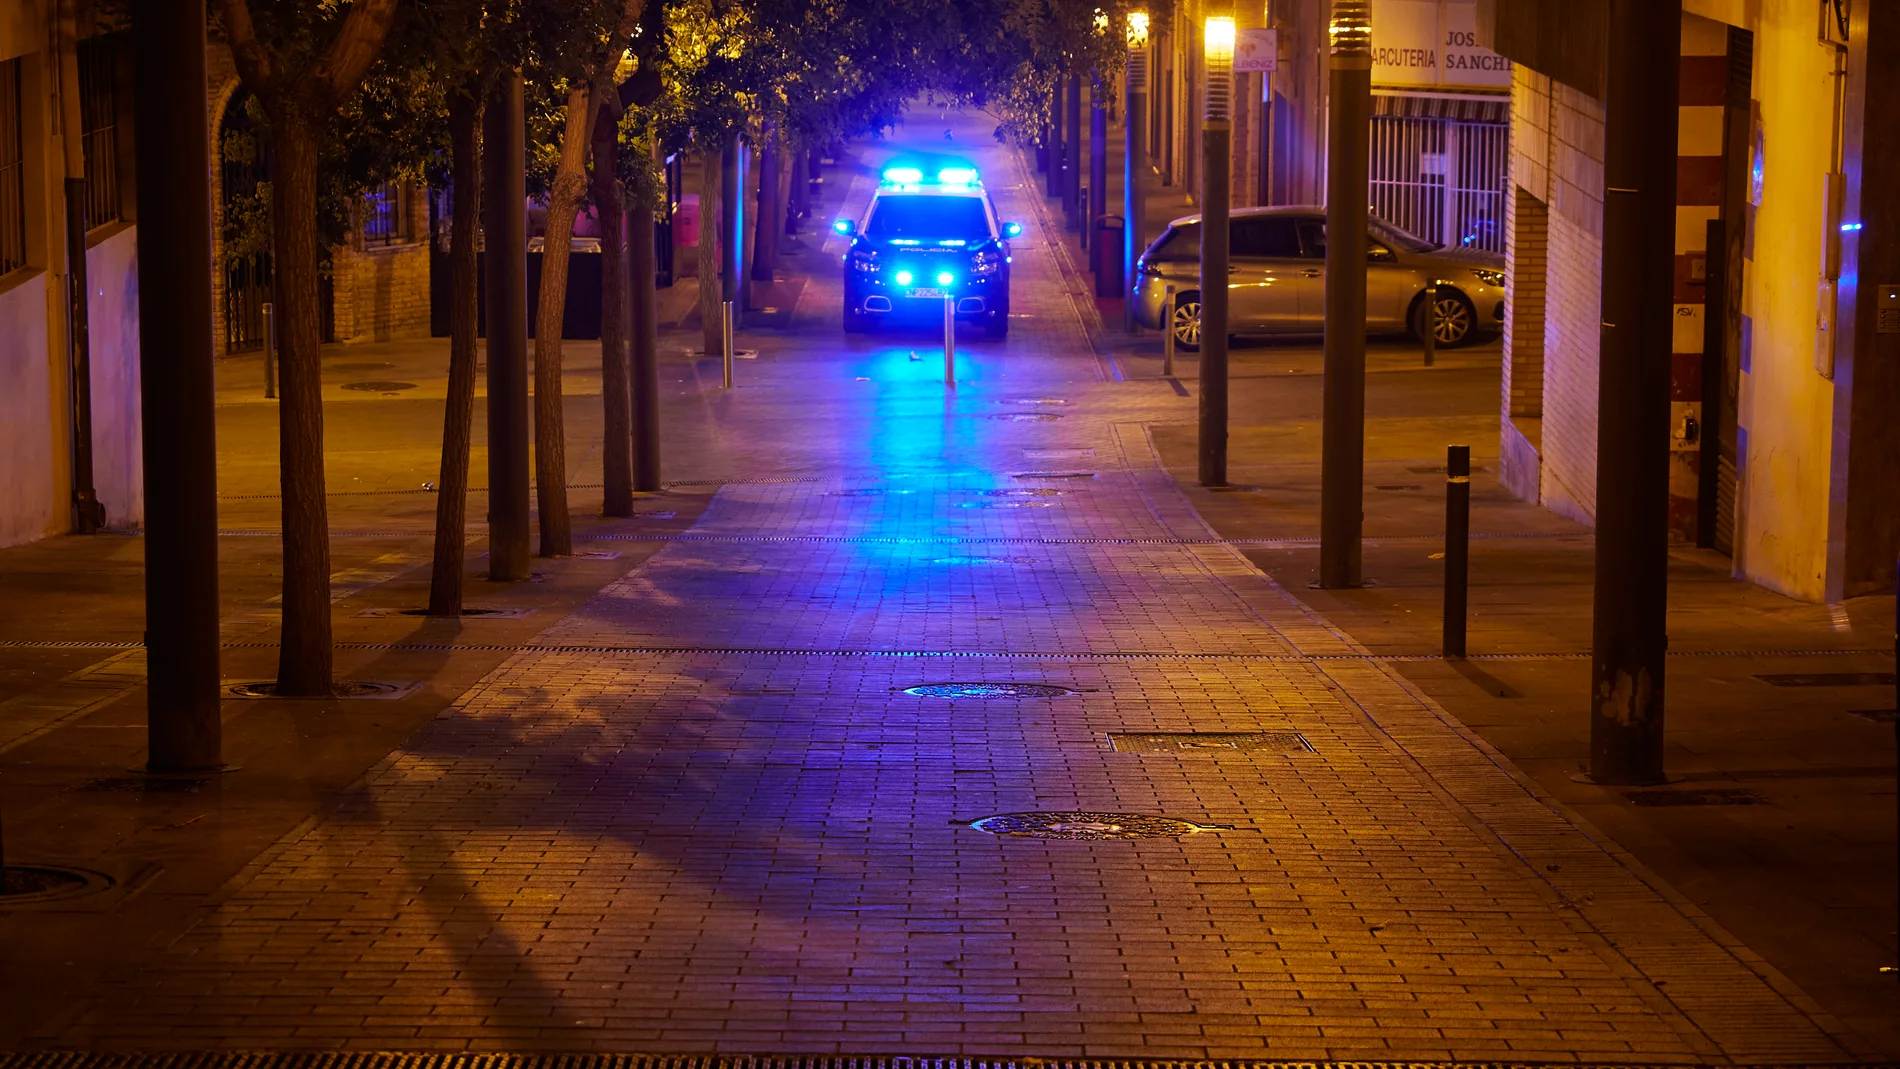 Un coche de la Policía Nacional patrullando por la noche.